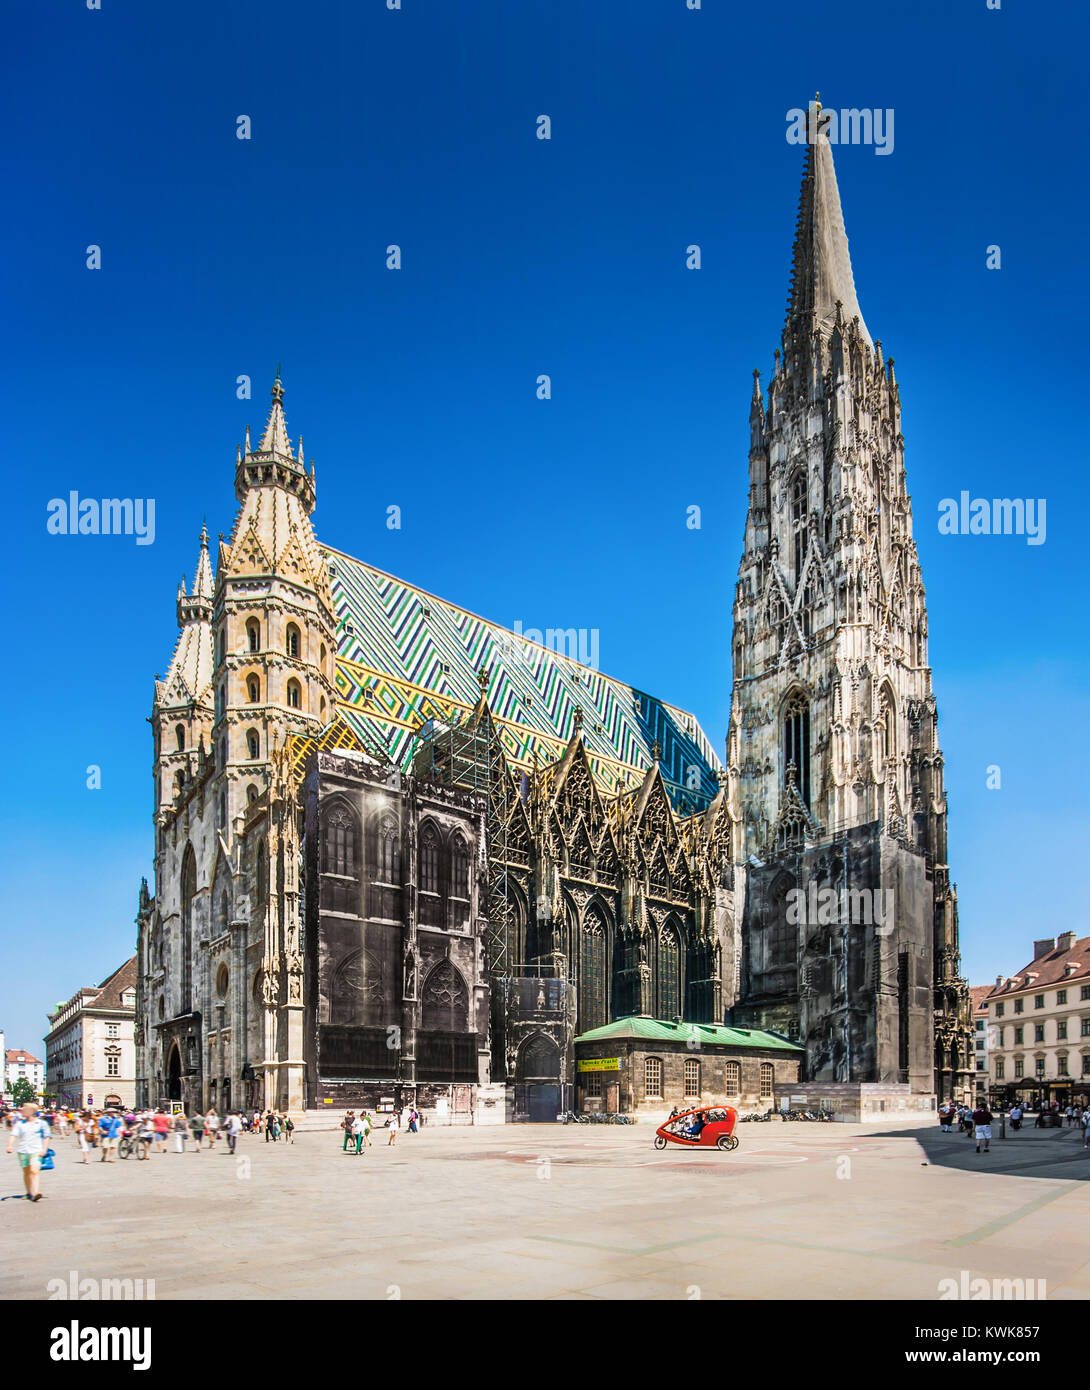 Belle vue sur célèbre la cathédrale Saint-Étienne (Stephansdom) Wiener à Stephansplatz à Vienne, Autriche Banque D'Images